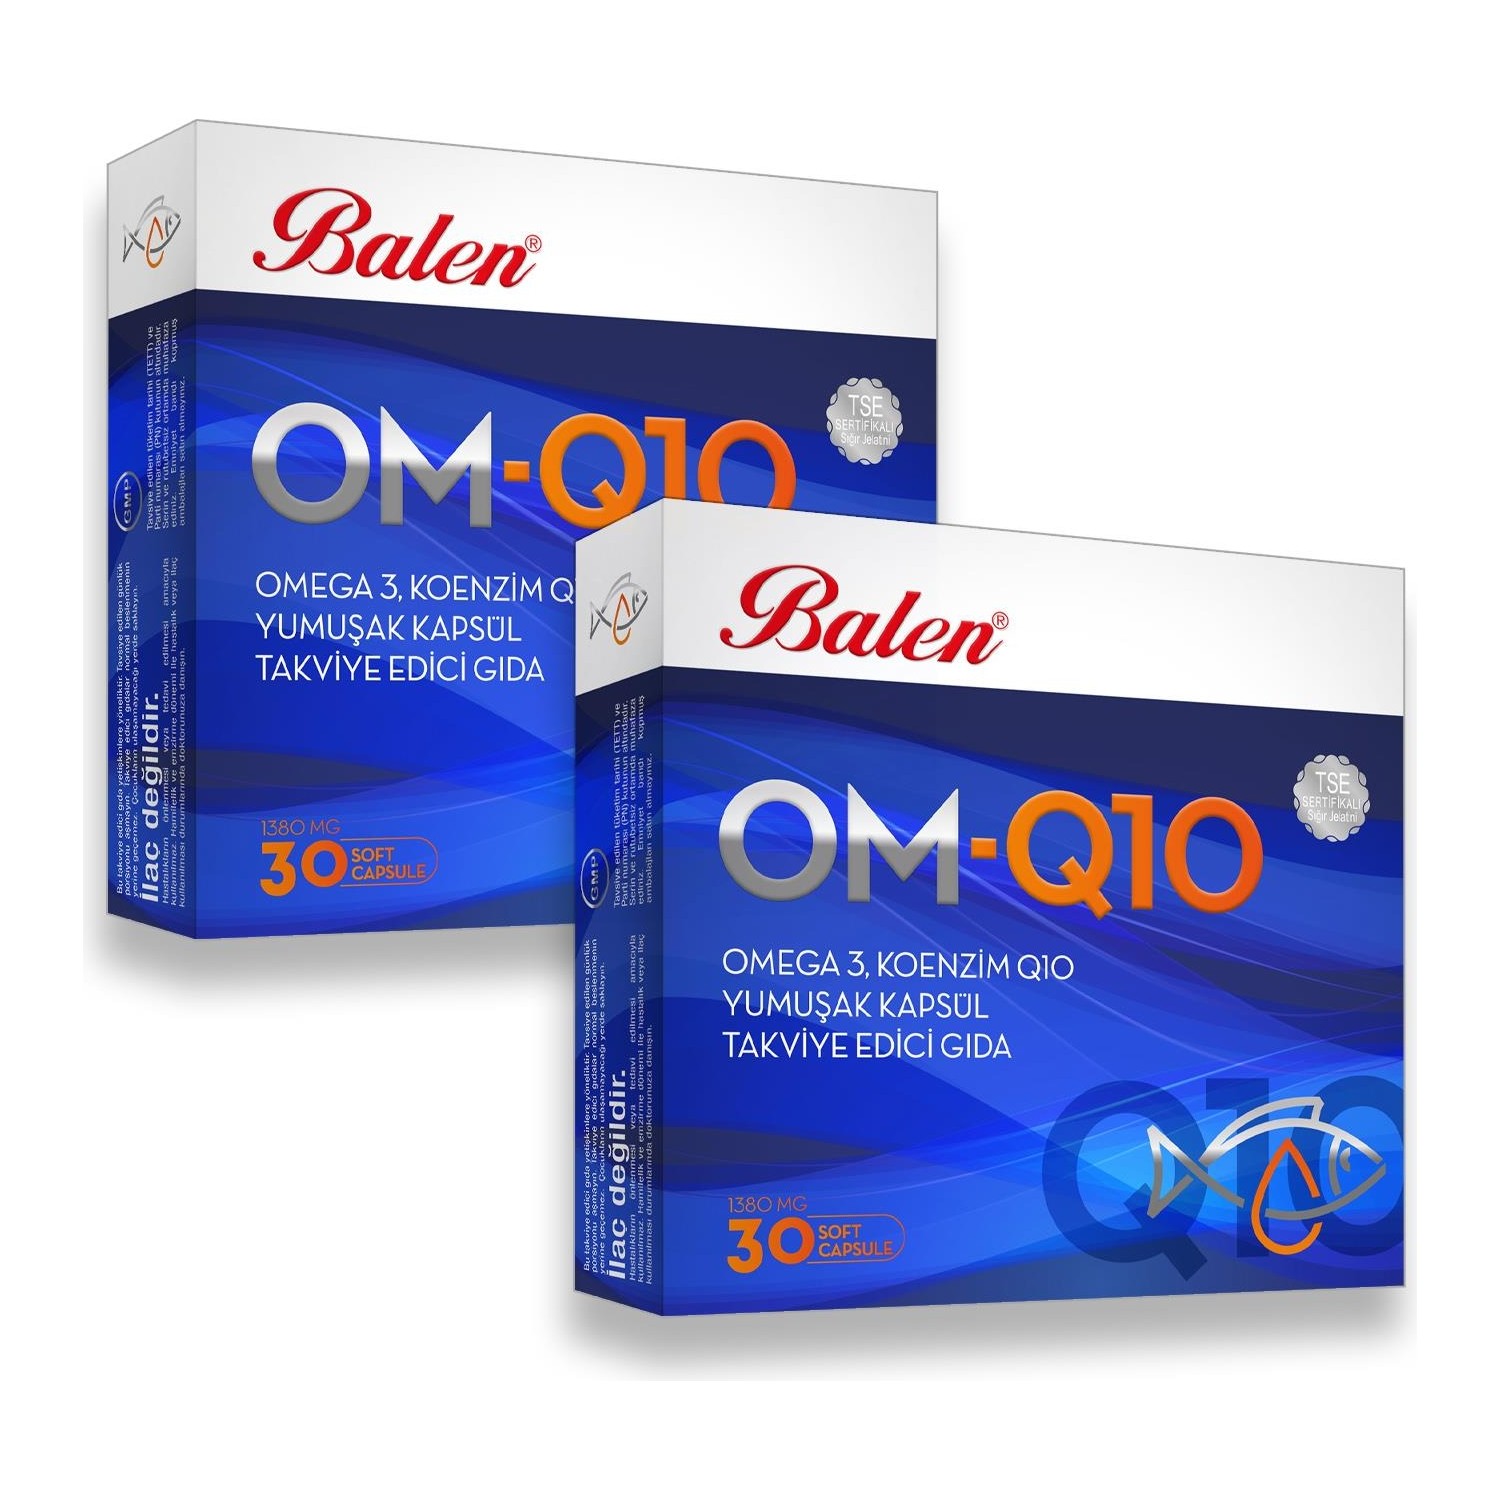 Рыбий жир Balen OM-Q10 Omega-3, 2 упаковки по 30 мягких капсул dr mercola липосомальный коэнзим q10 100 мг 30 капсул